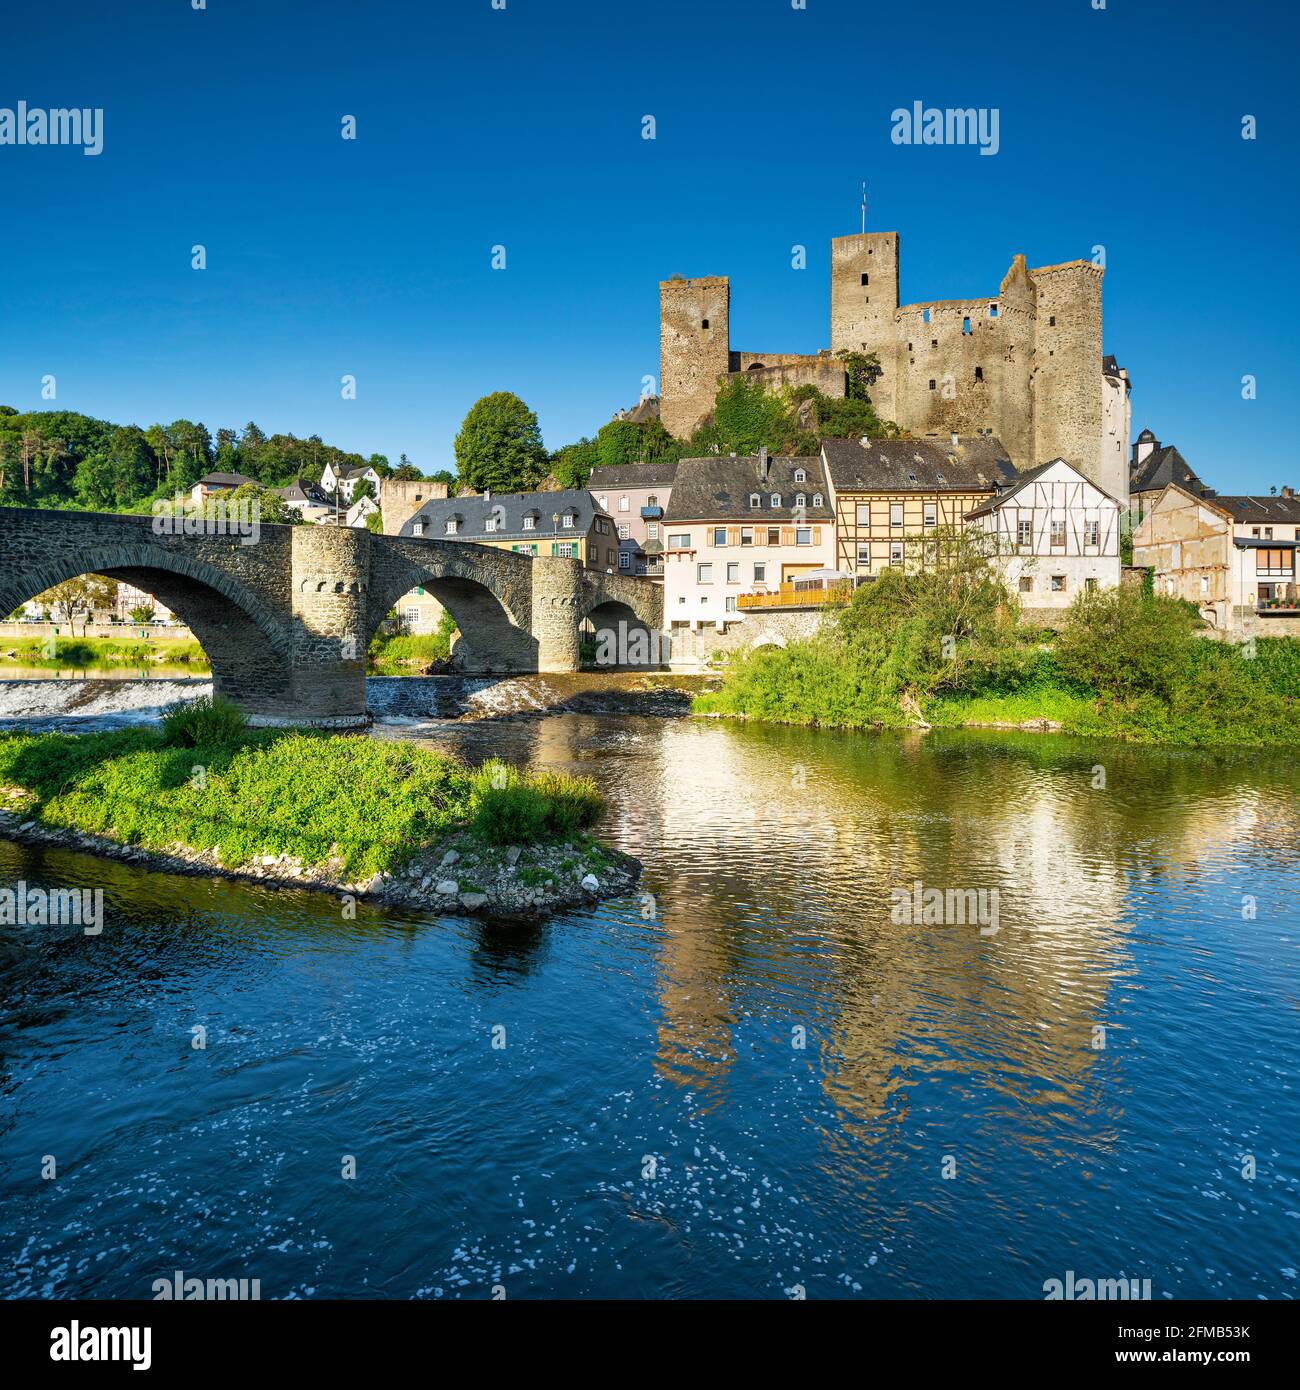 Deutschland, Hessen, Runkel, Schloss und Stadt Runkel mit einer mittelalterlichen Steinbrücke über die Lahn Stockfoto